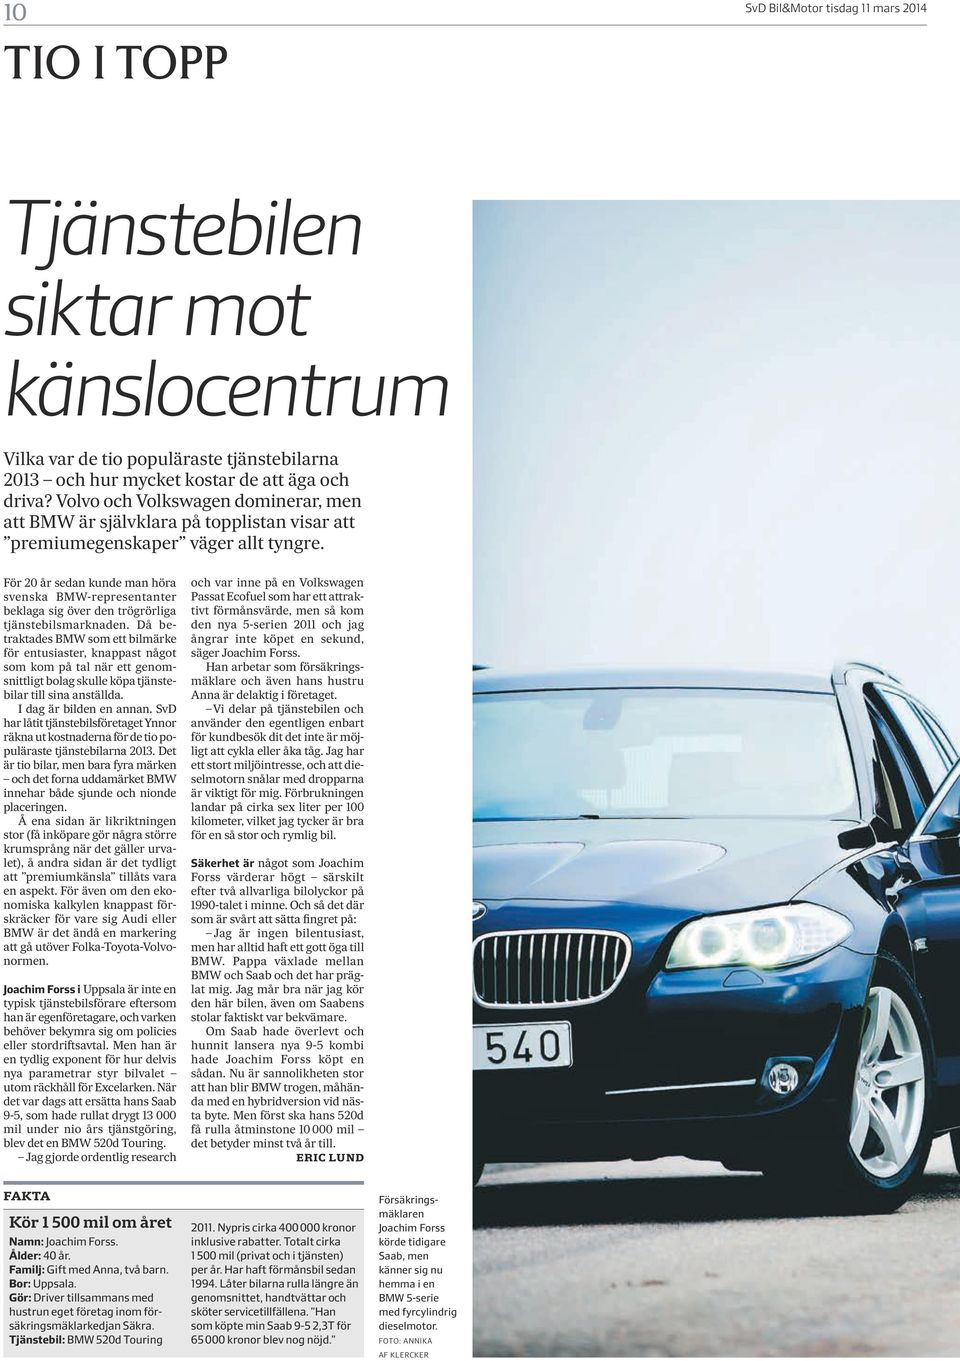 För 20 år sedan kunde man höra svenska BMW-representanter beklaga sig över den trögrörliga tjänstebilsmarknaden.